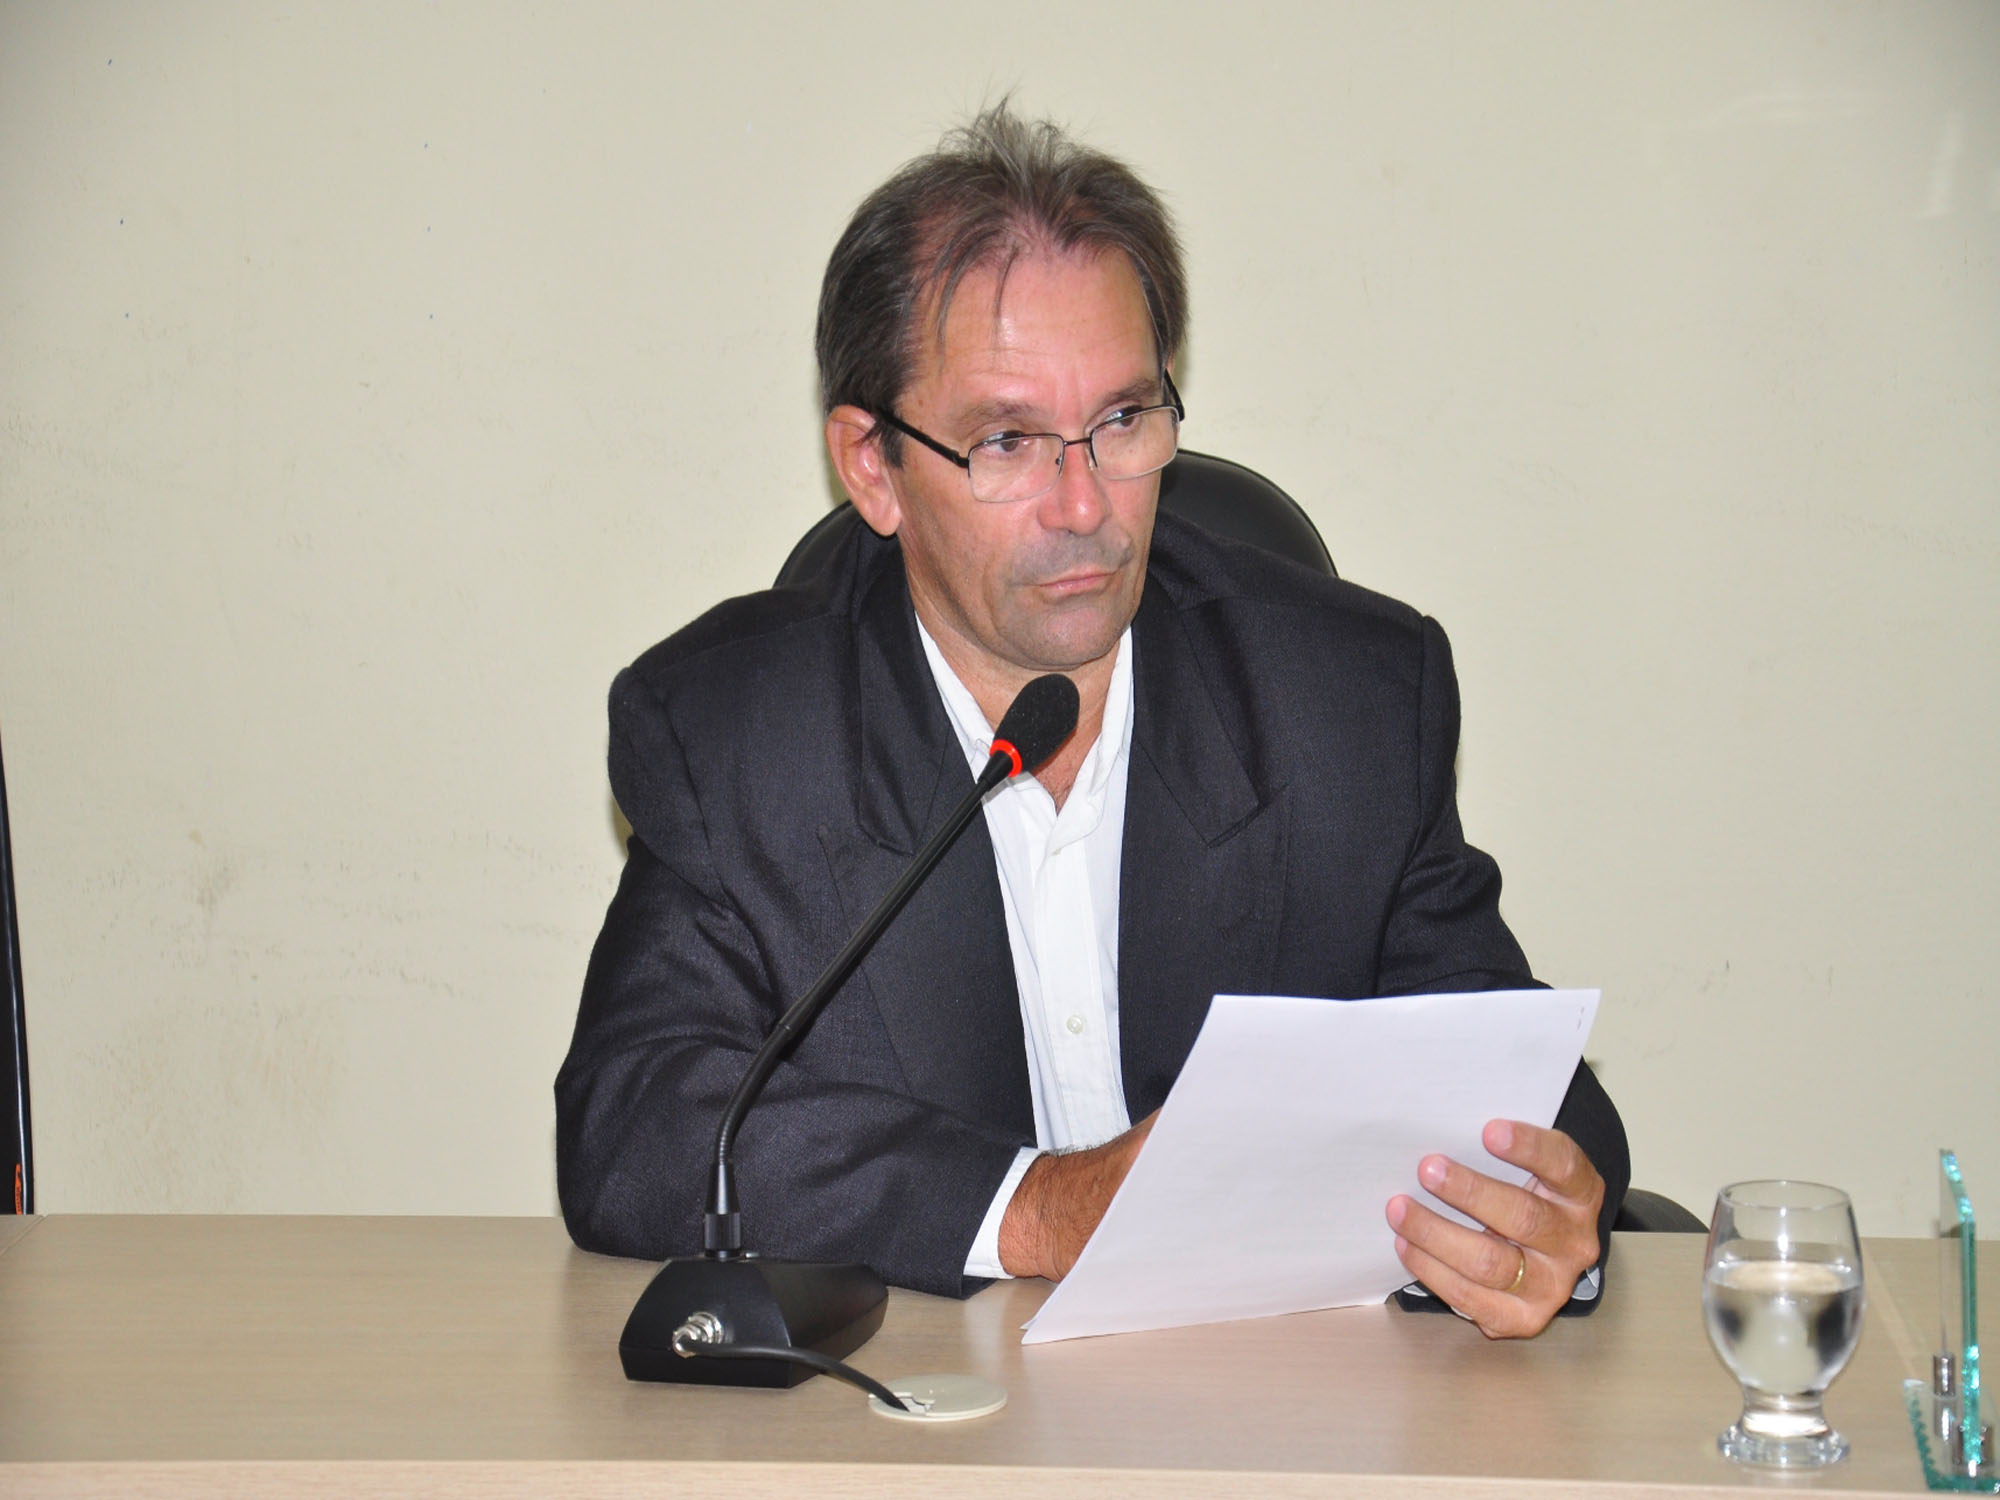 Ver. Prof. Bernardo propõe moções na Sessão ordinária 018/2015